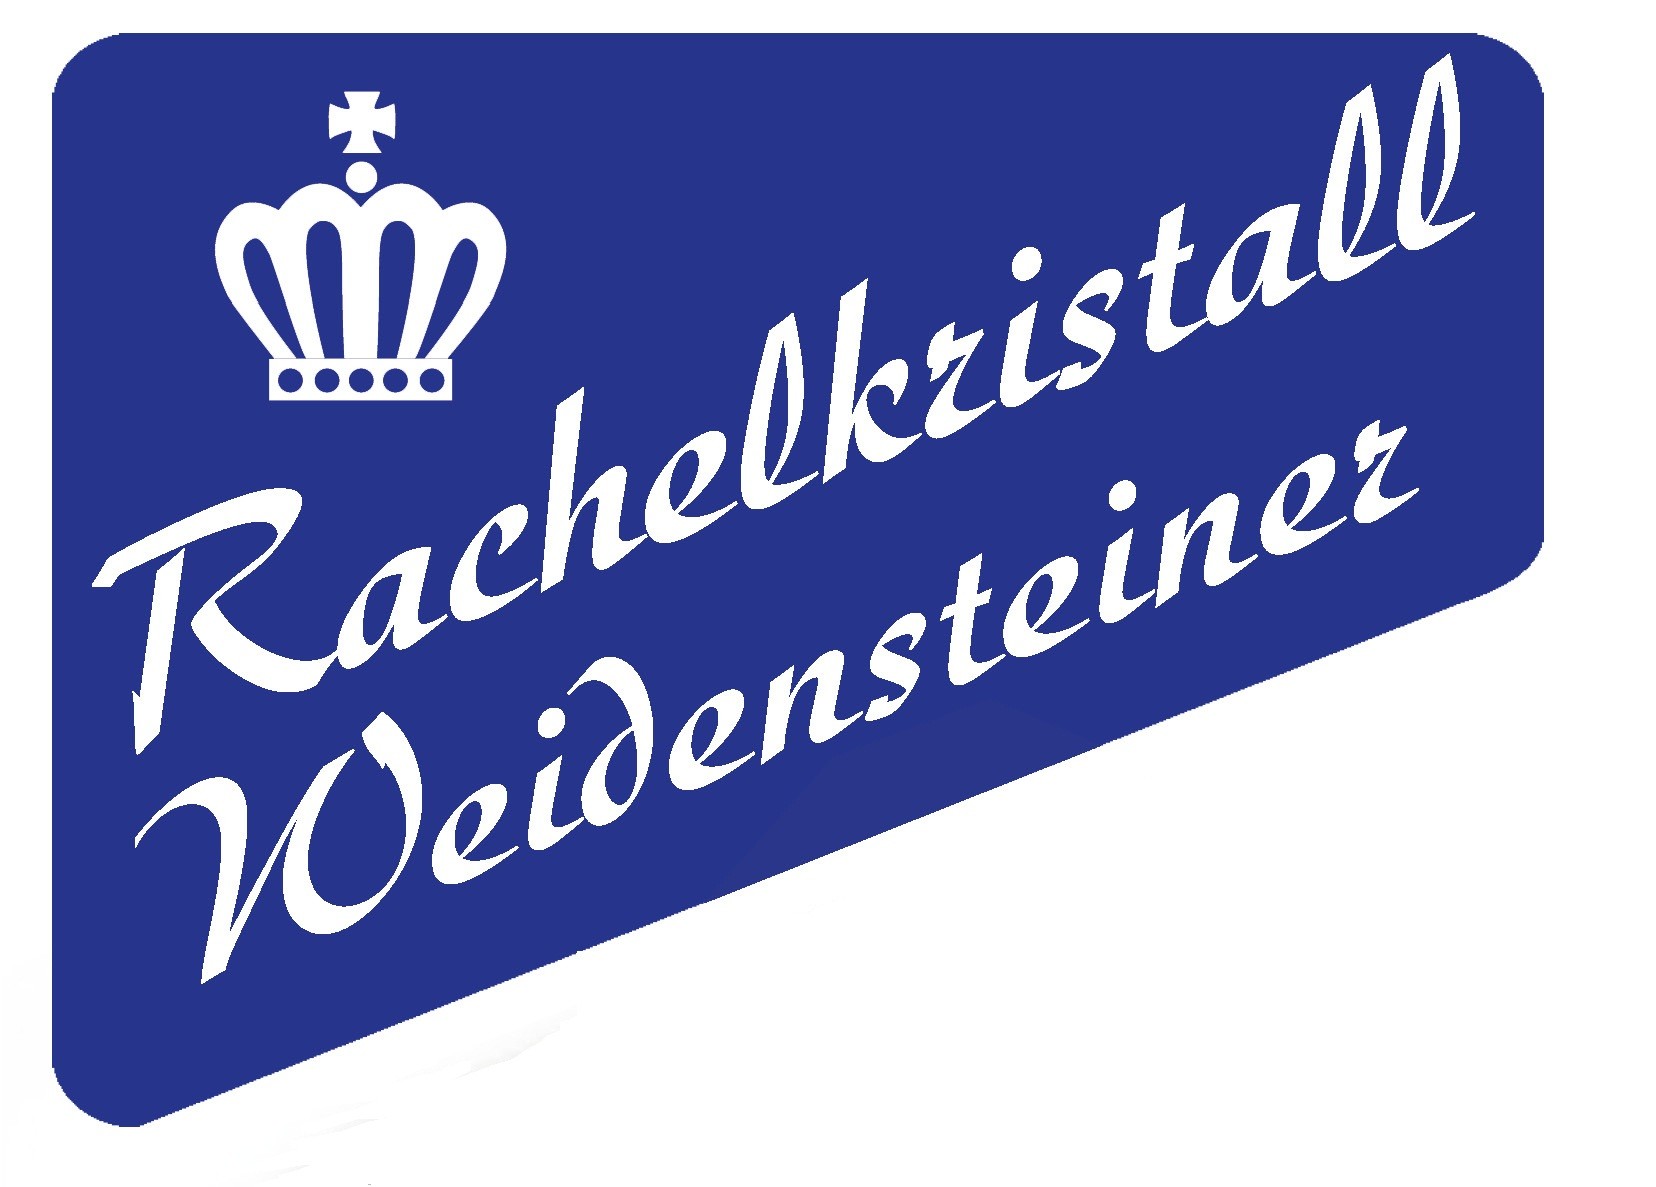 logo-rachelkristall-weidensteiner